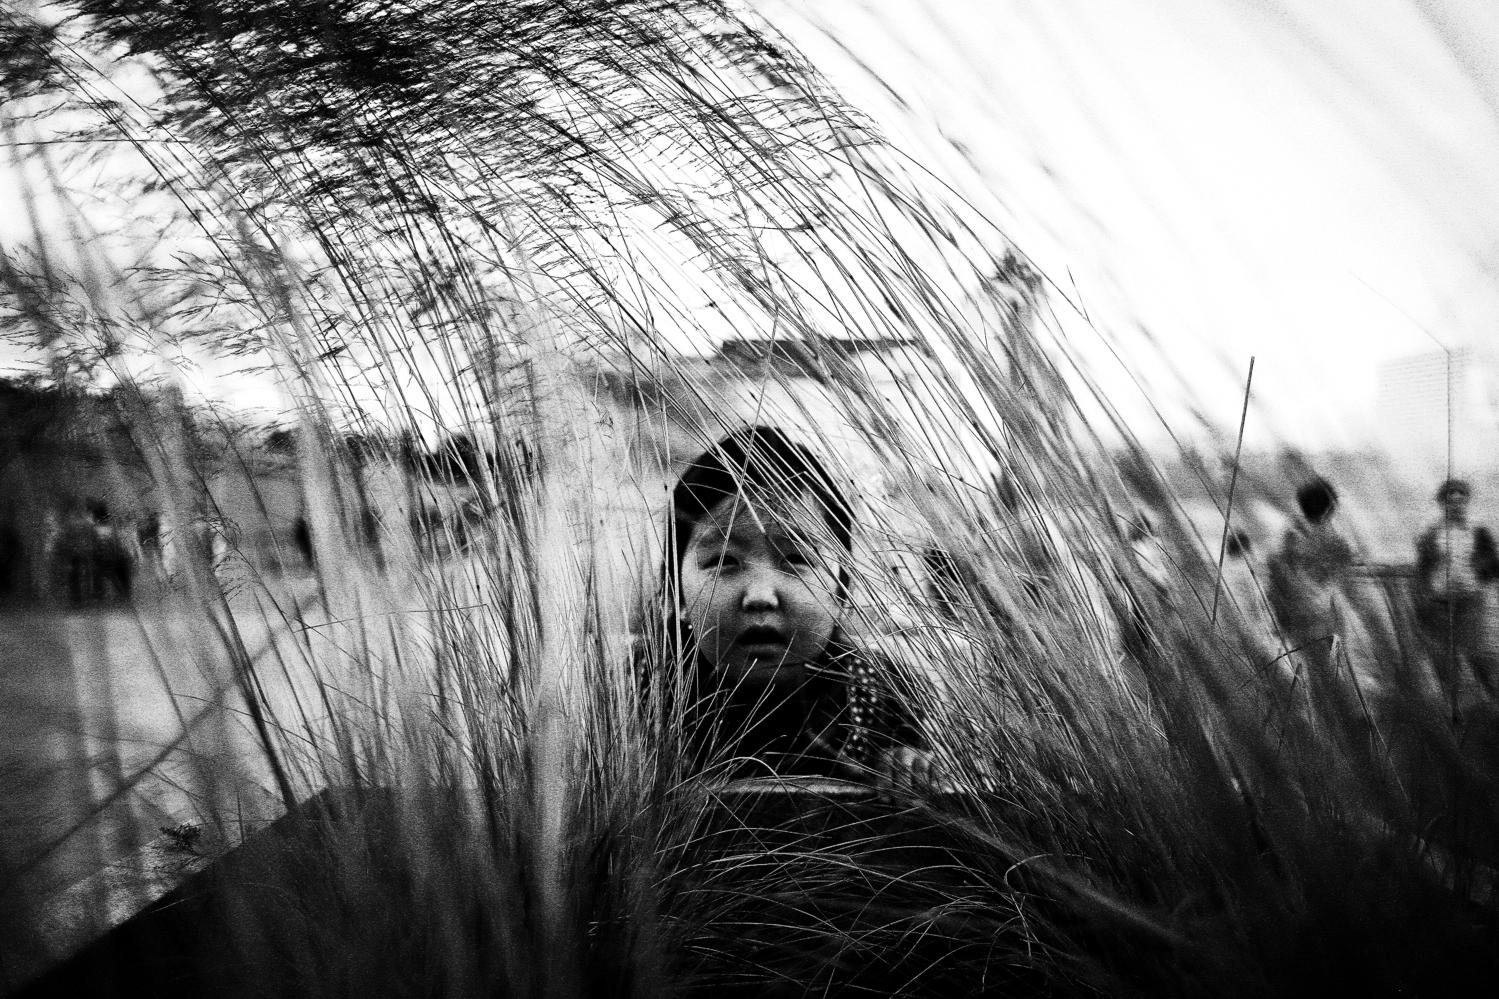 в траве | Фотограф урал КЗН | foto.by фото.бай